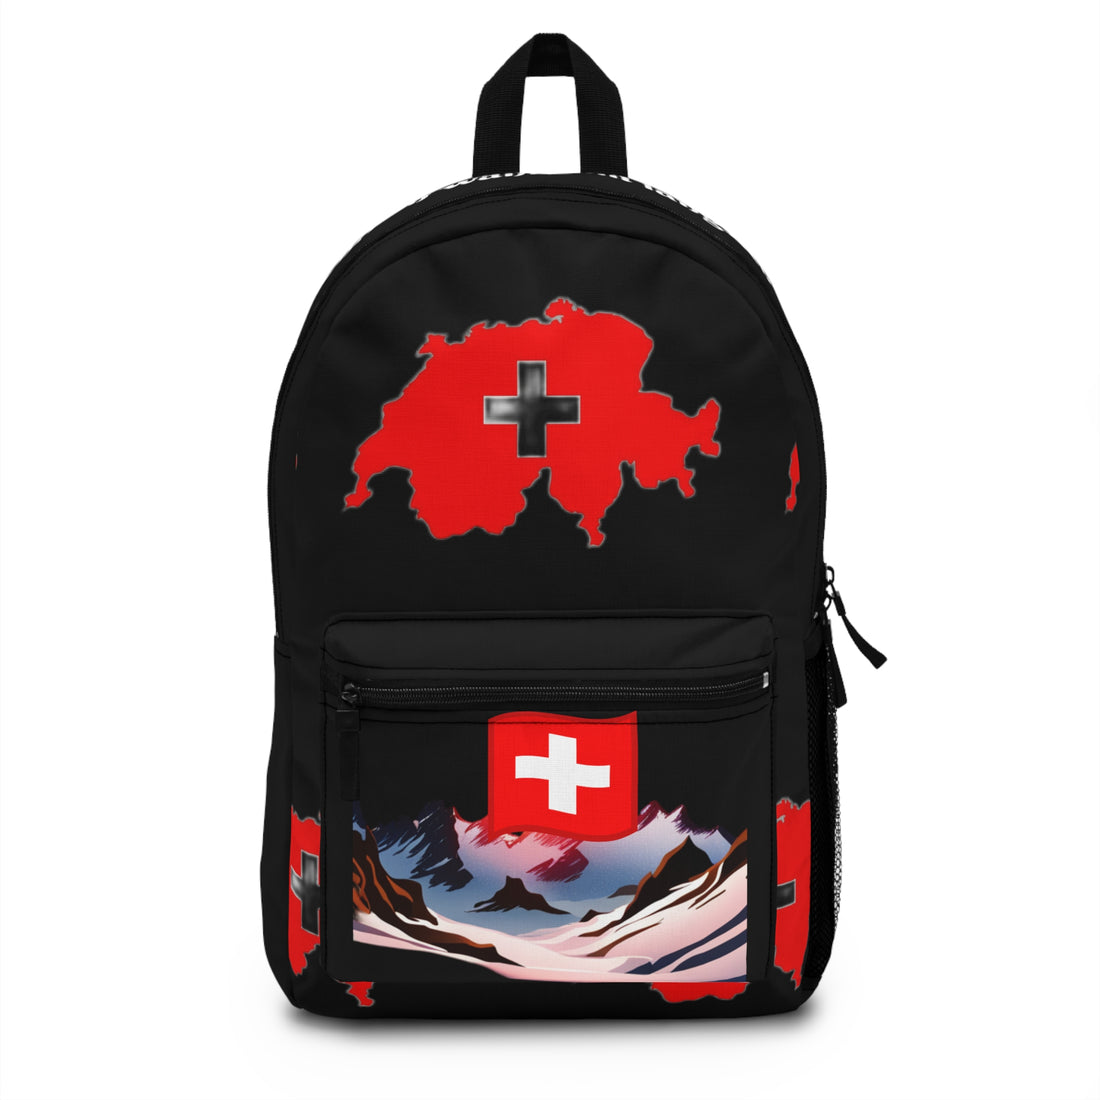 Backpack Switzerland -Ehrlich währt am längsten